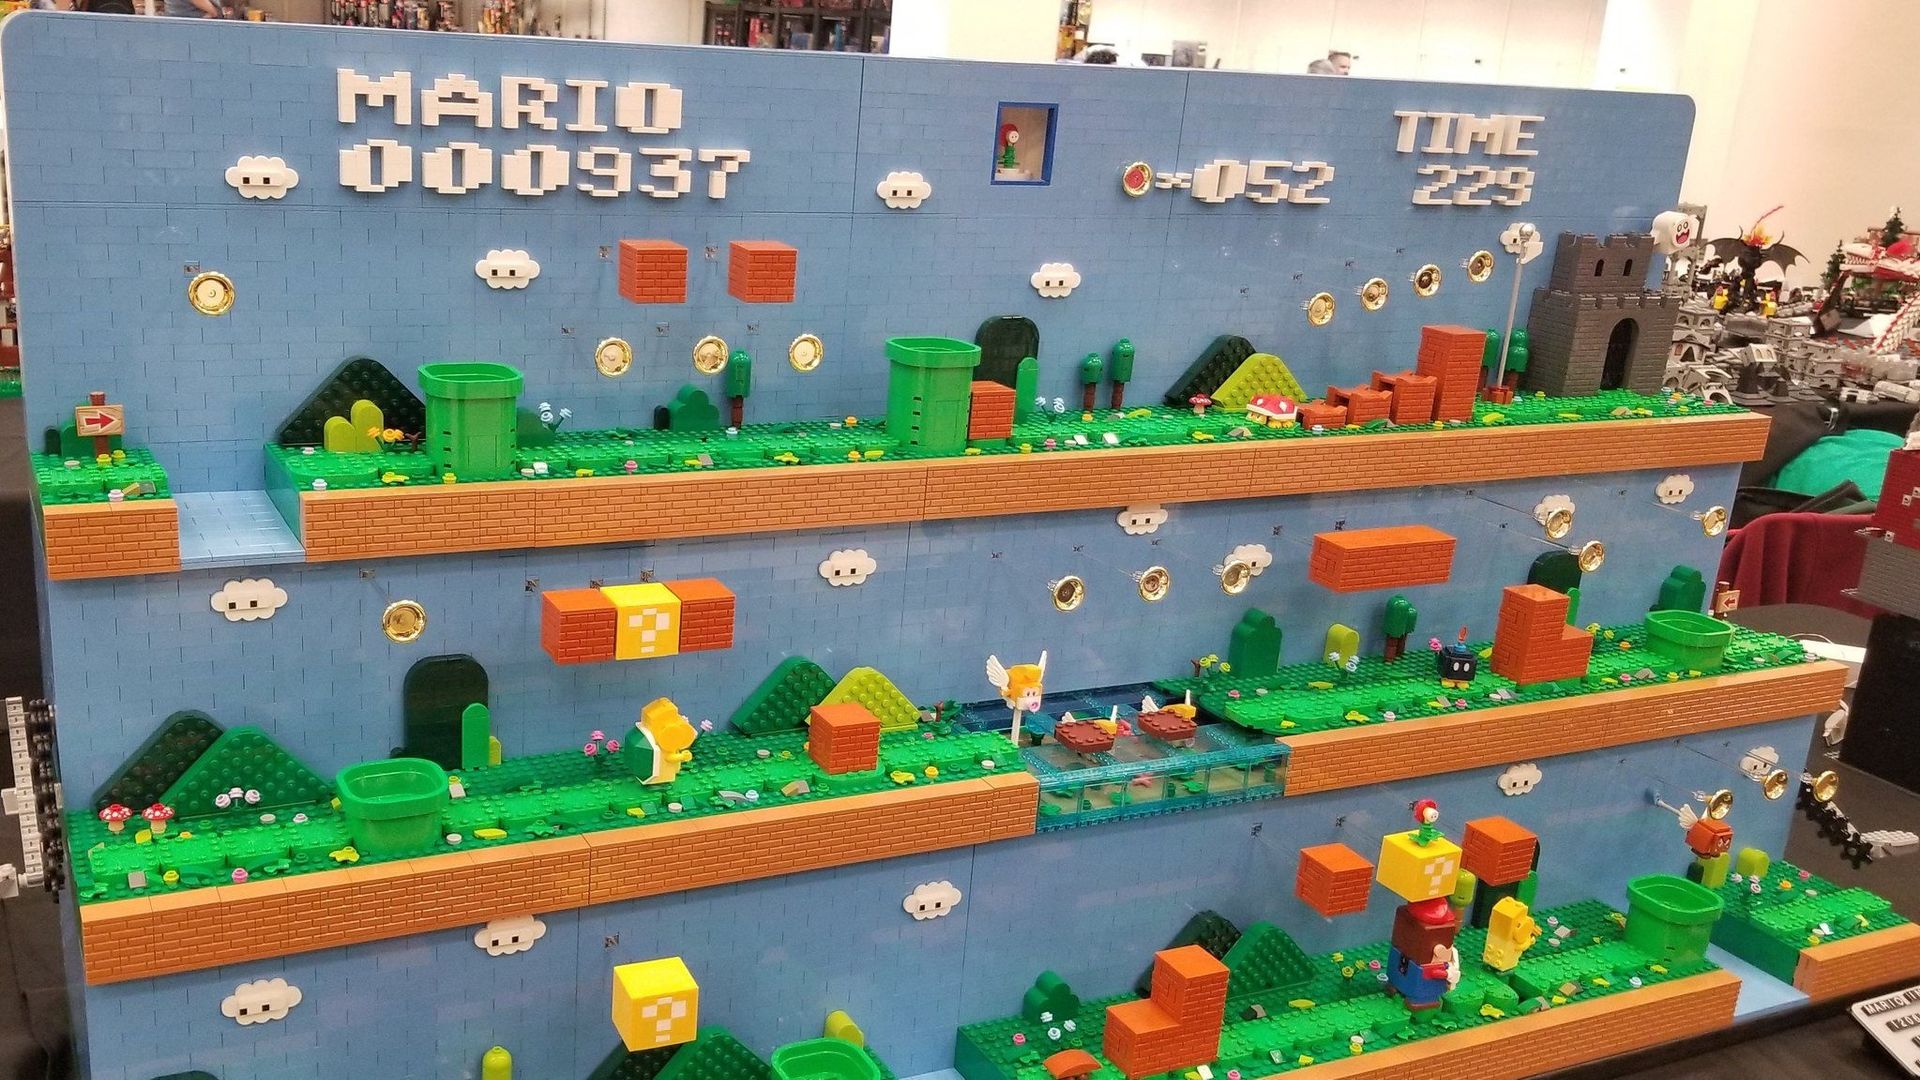 LEGO dévoile une figurine Bowser de près de 3000 pièces 